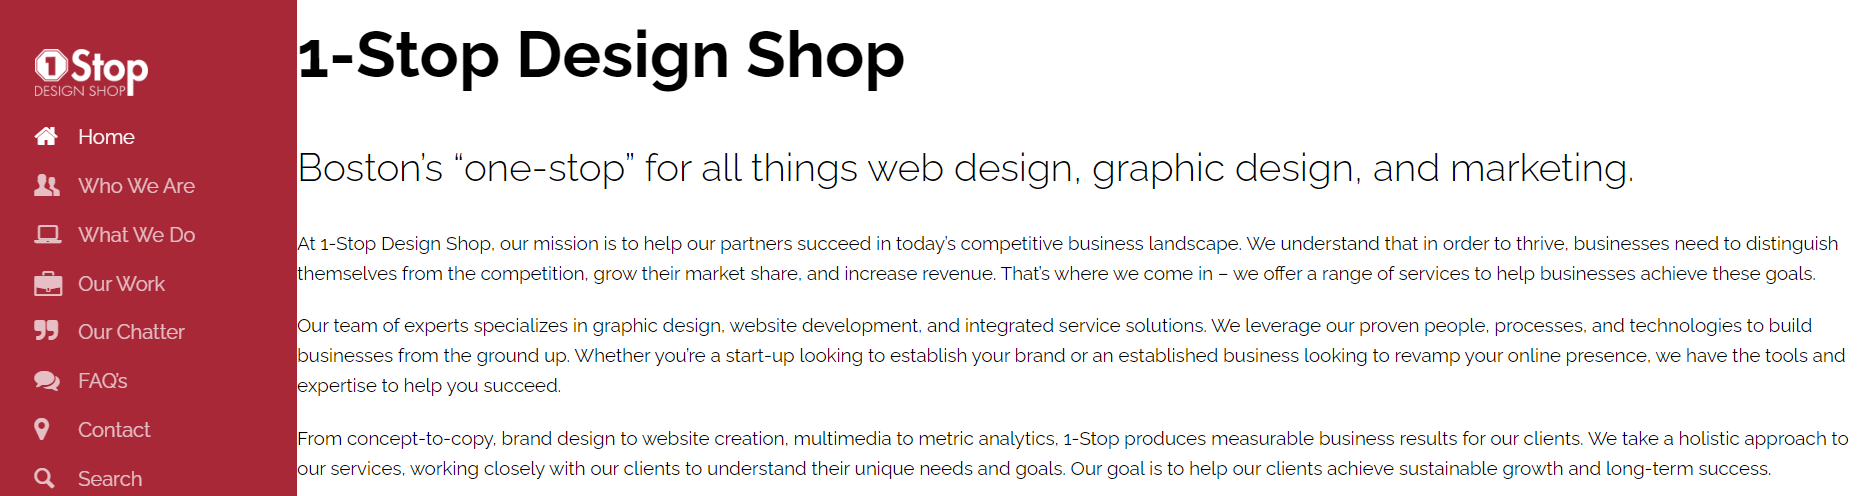 1 Stop Design Shop